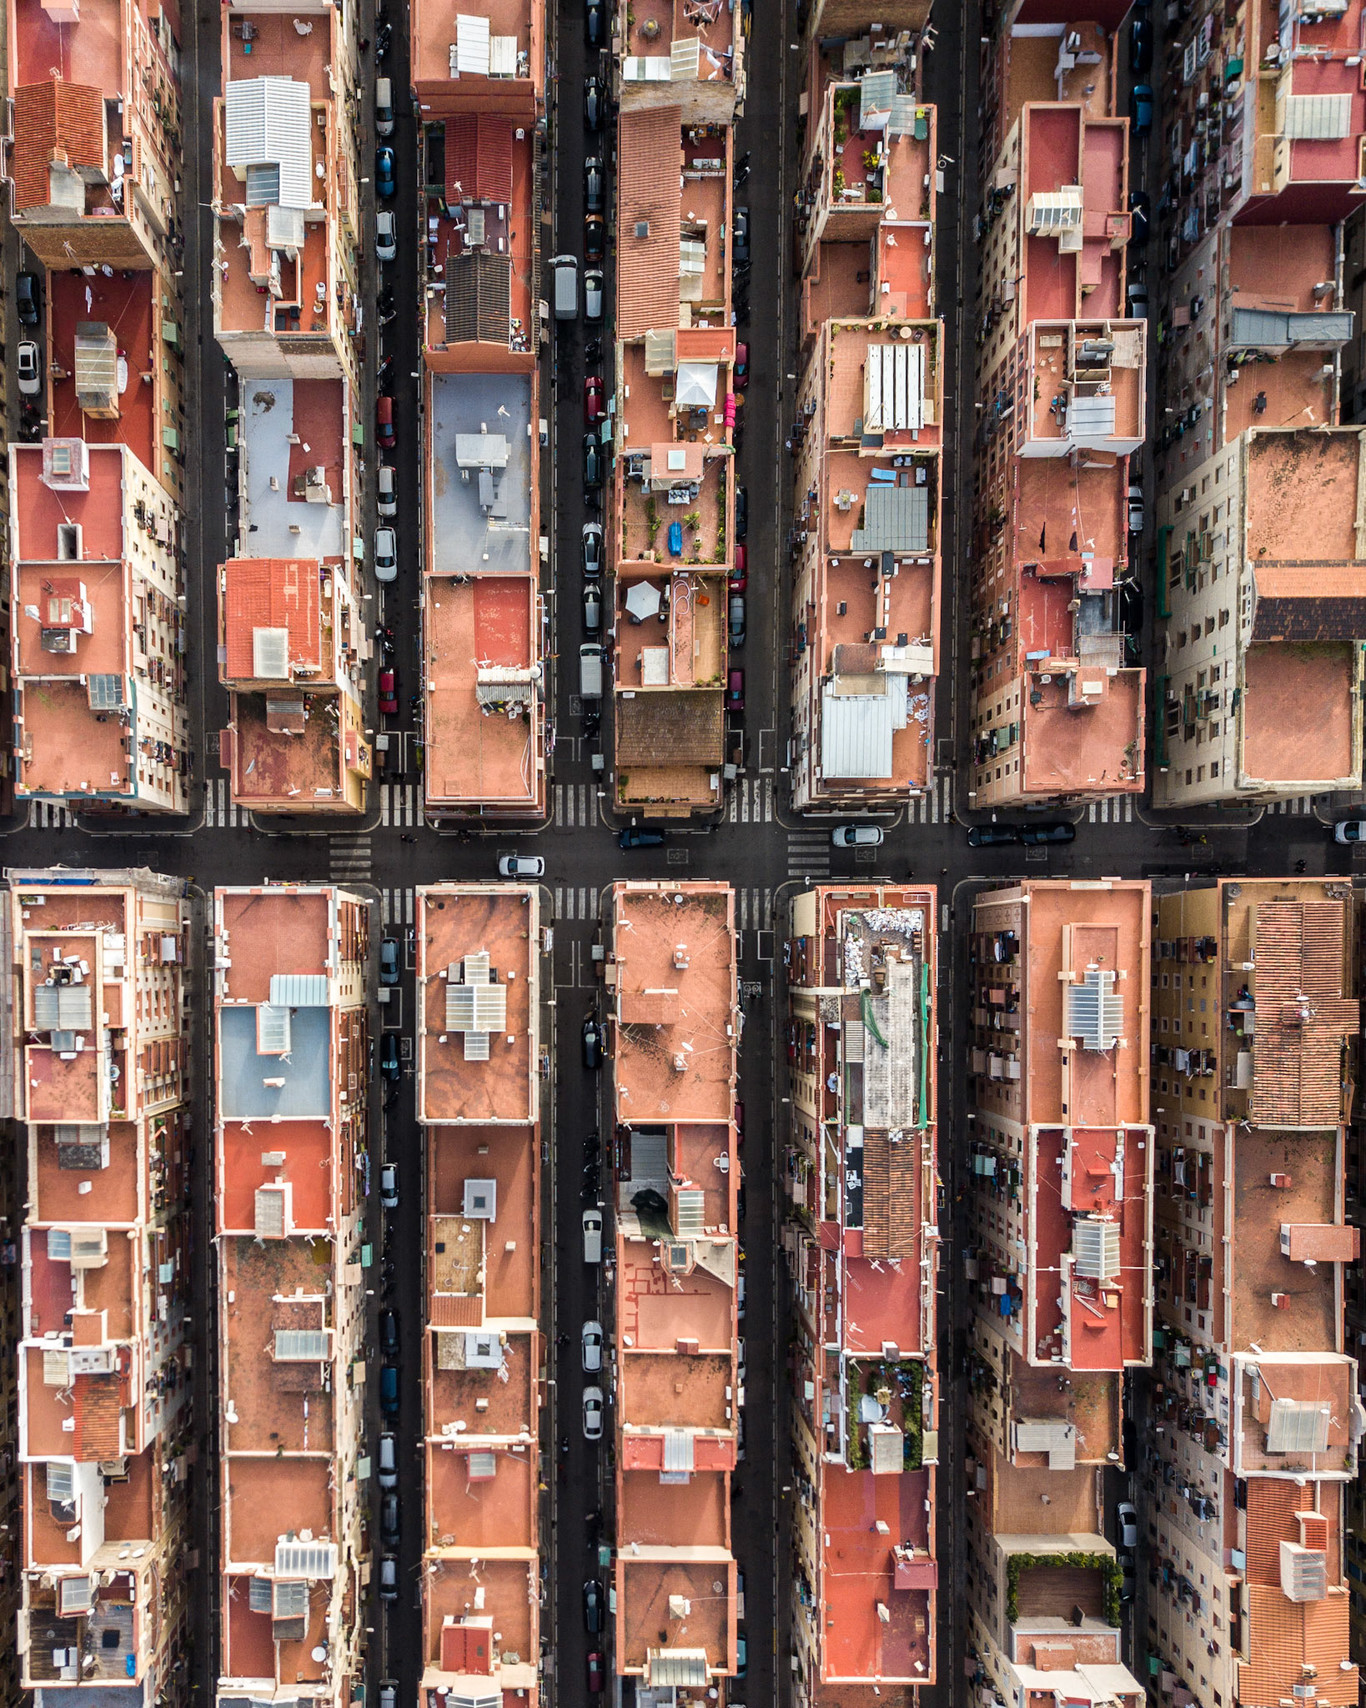 (Imágenes) Fotógrafo húngaro capta con drone impresionantes imágenes de Barcelona